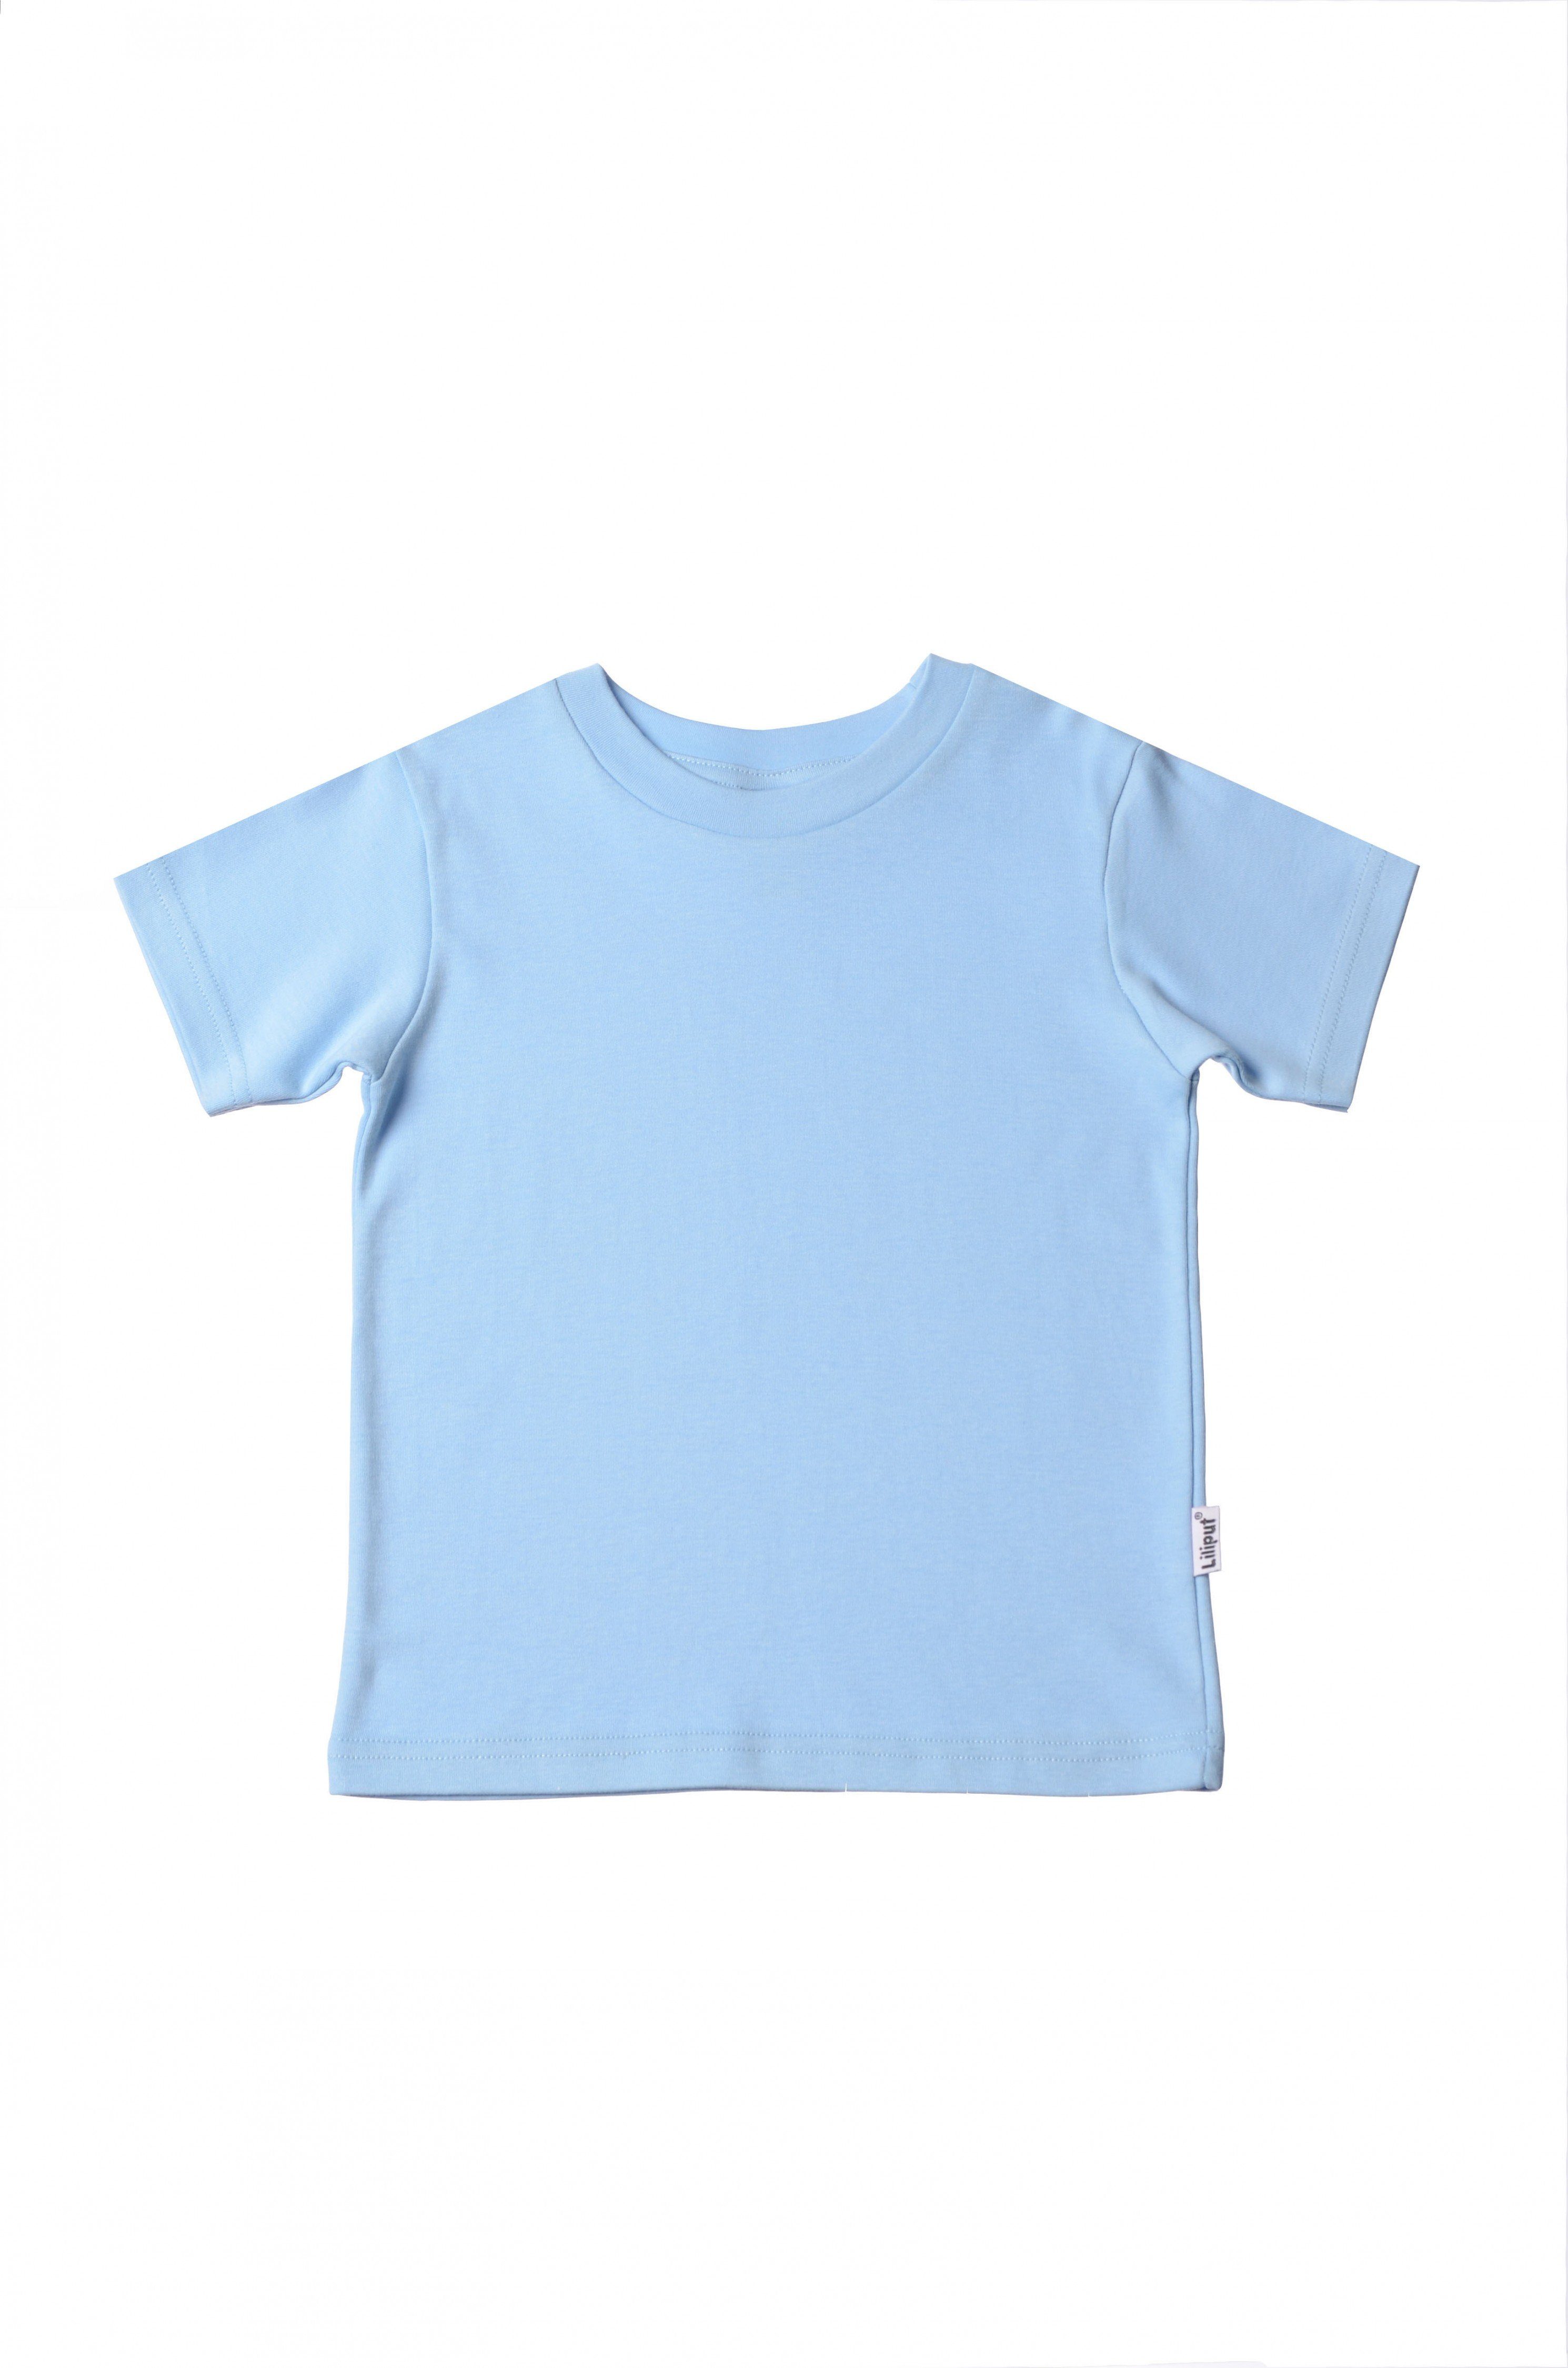 Design Liliput in T-Shirt niedlichem hellblau